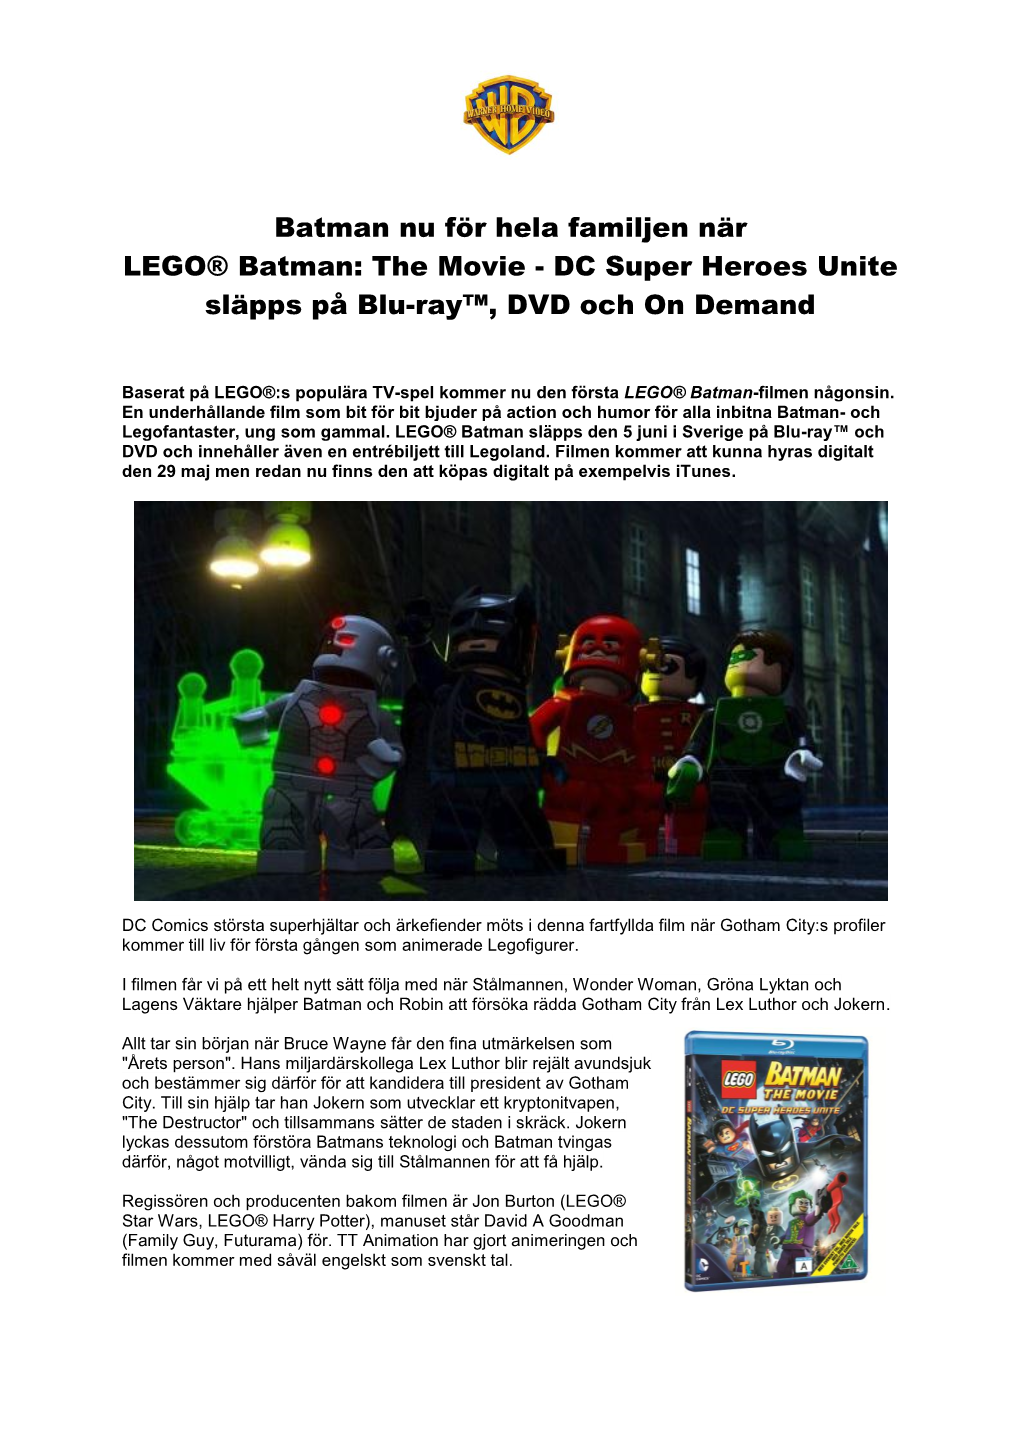 The Movie - DC Super Heroes Unite Släpps På Blu-Ray™, DVD Och on Demand